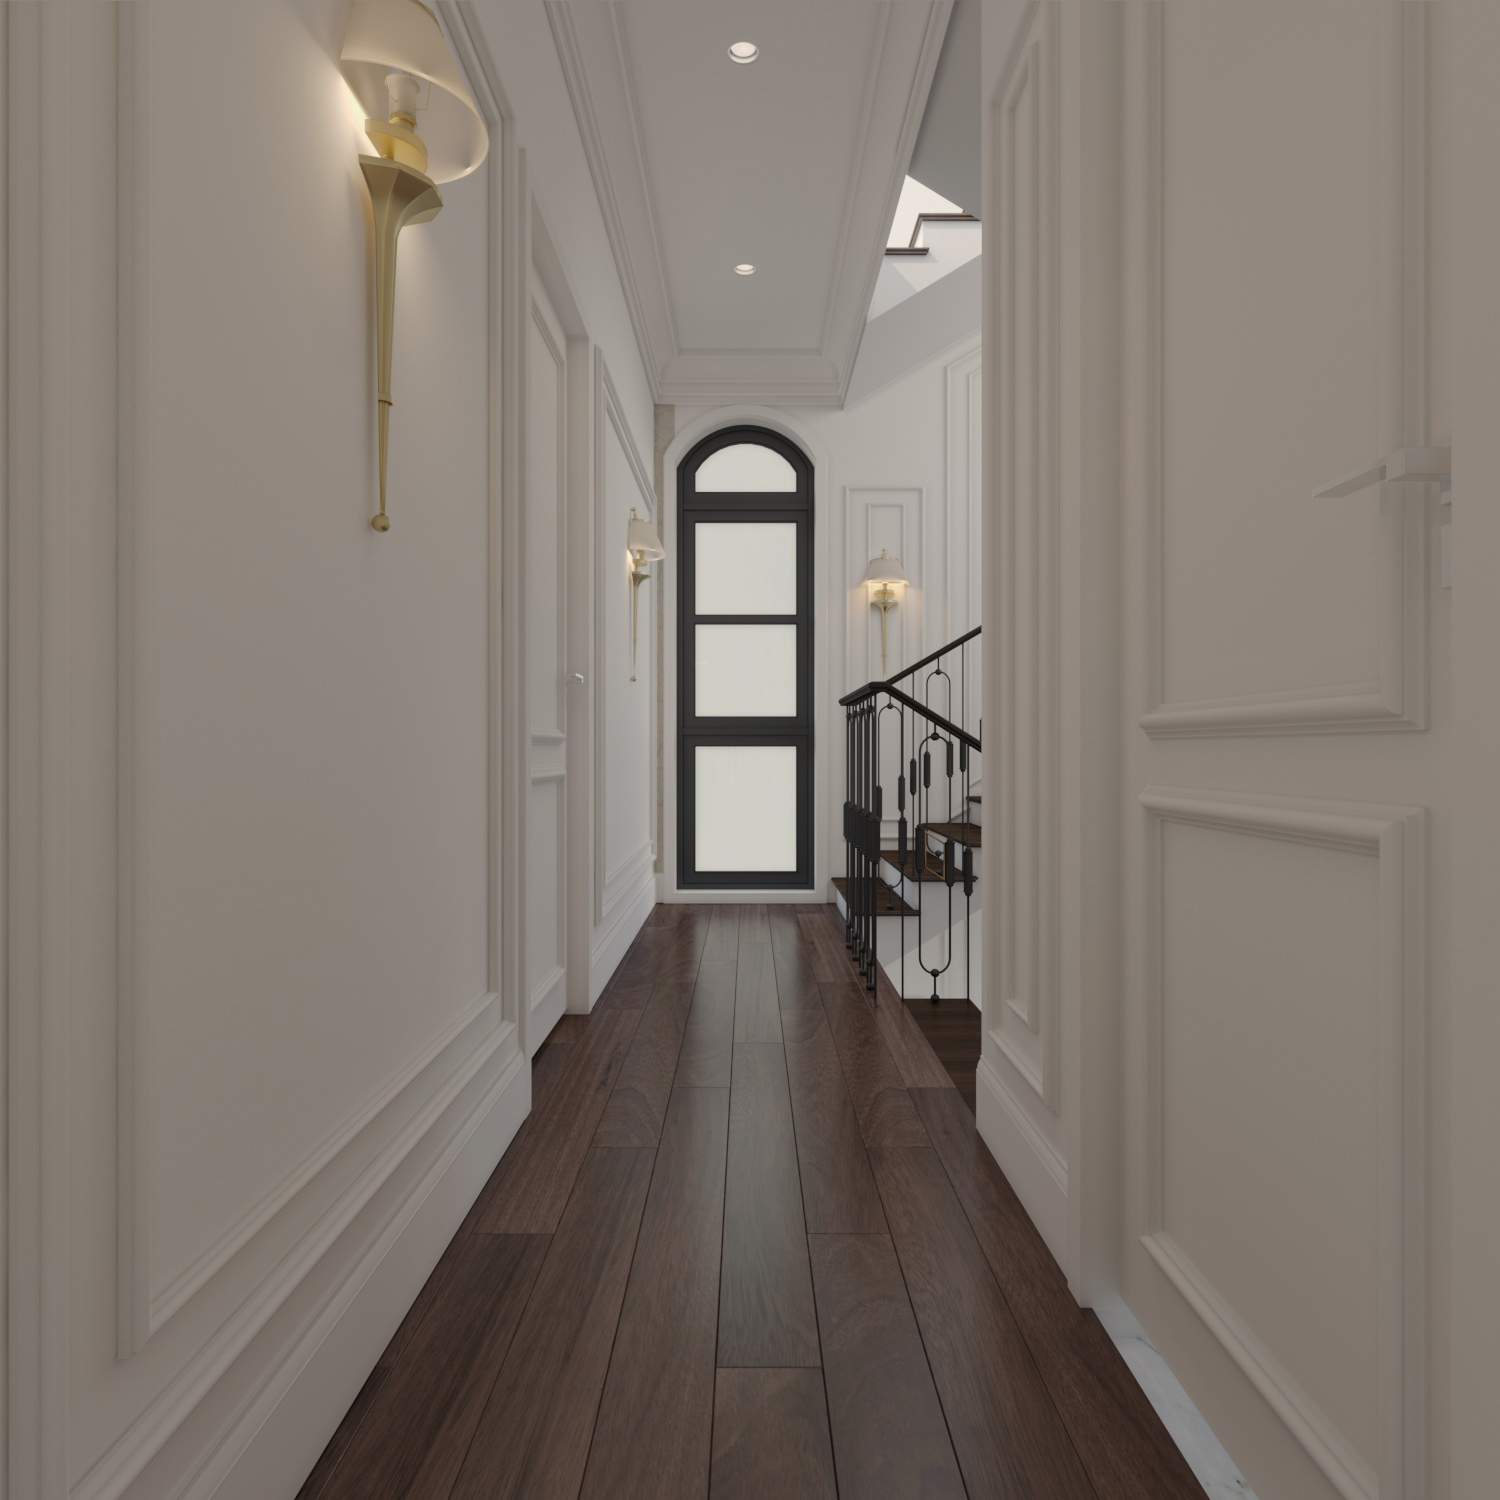 Thiết kế nội thất Biệt Thự tại Hải Phòng BIỆT THỰ VIN HP 1593508237 31